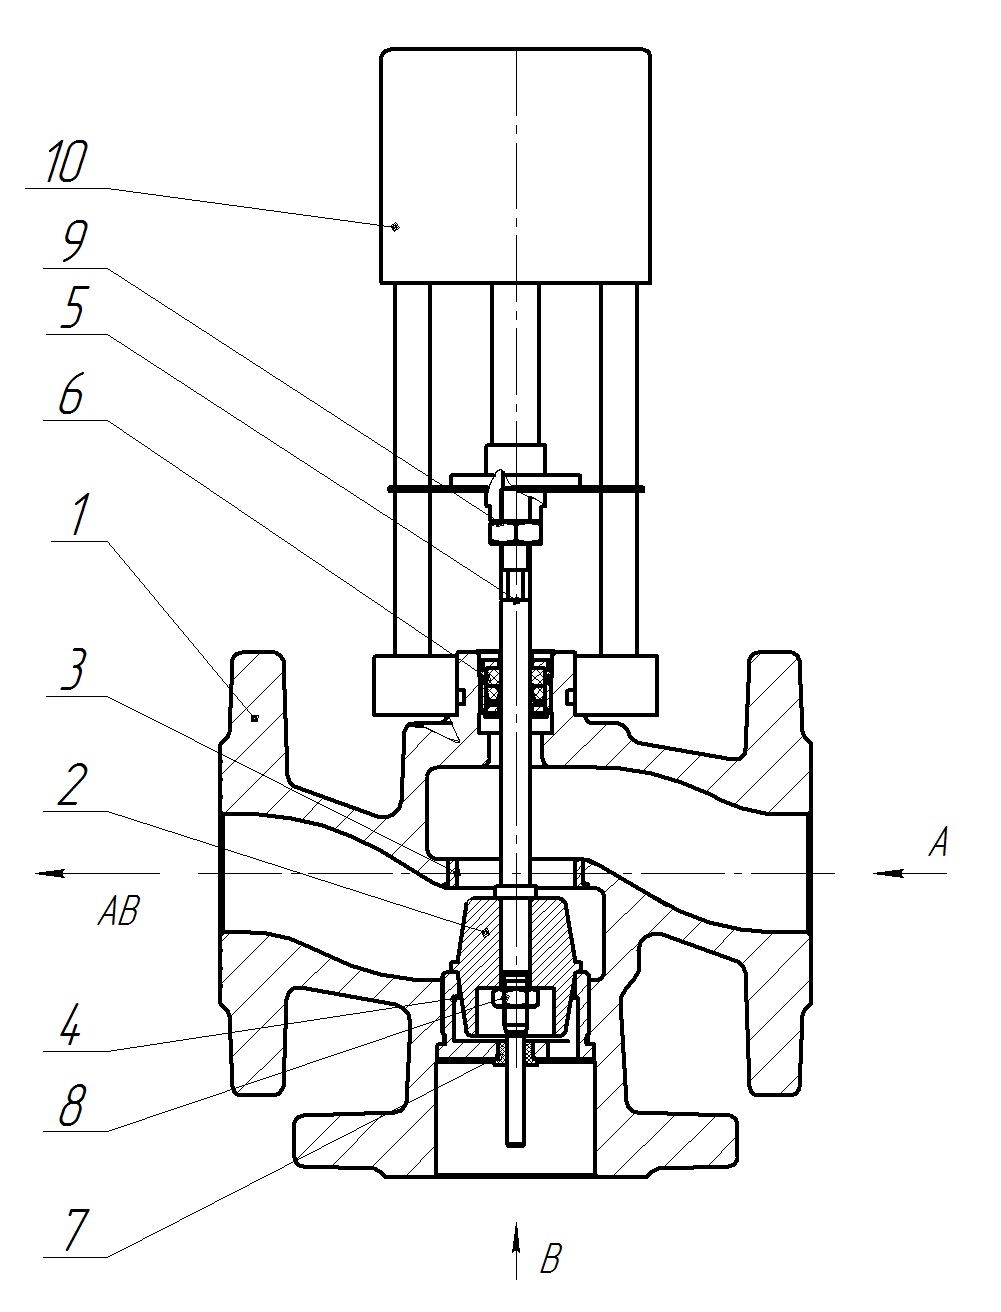 Клапан регулирующий трехходовой разделительный DN.ru 23ч901нж Ду25 Ру16 Kvs1,6 серый чугун СЧ20, фланцевый, Tmax до 150°С с электроприводом Катрабел TW-500-XD220